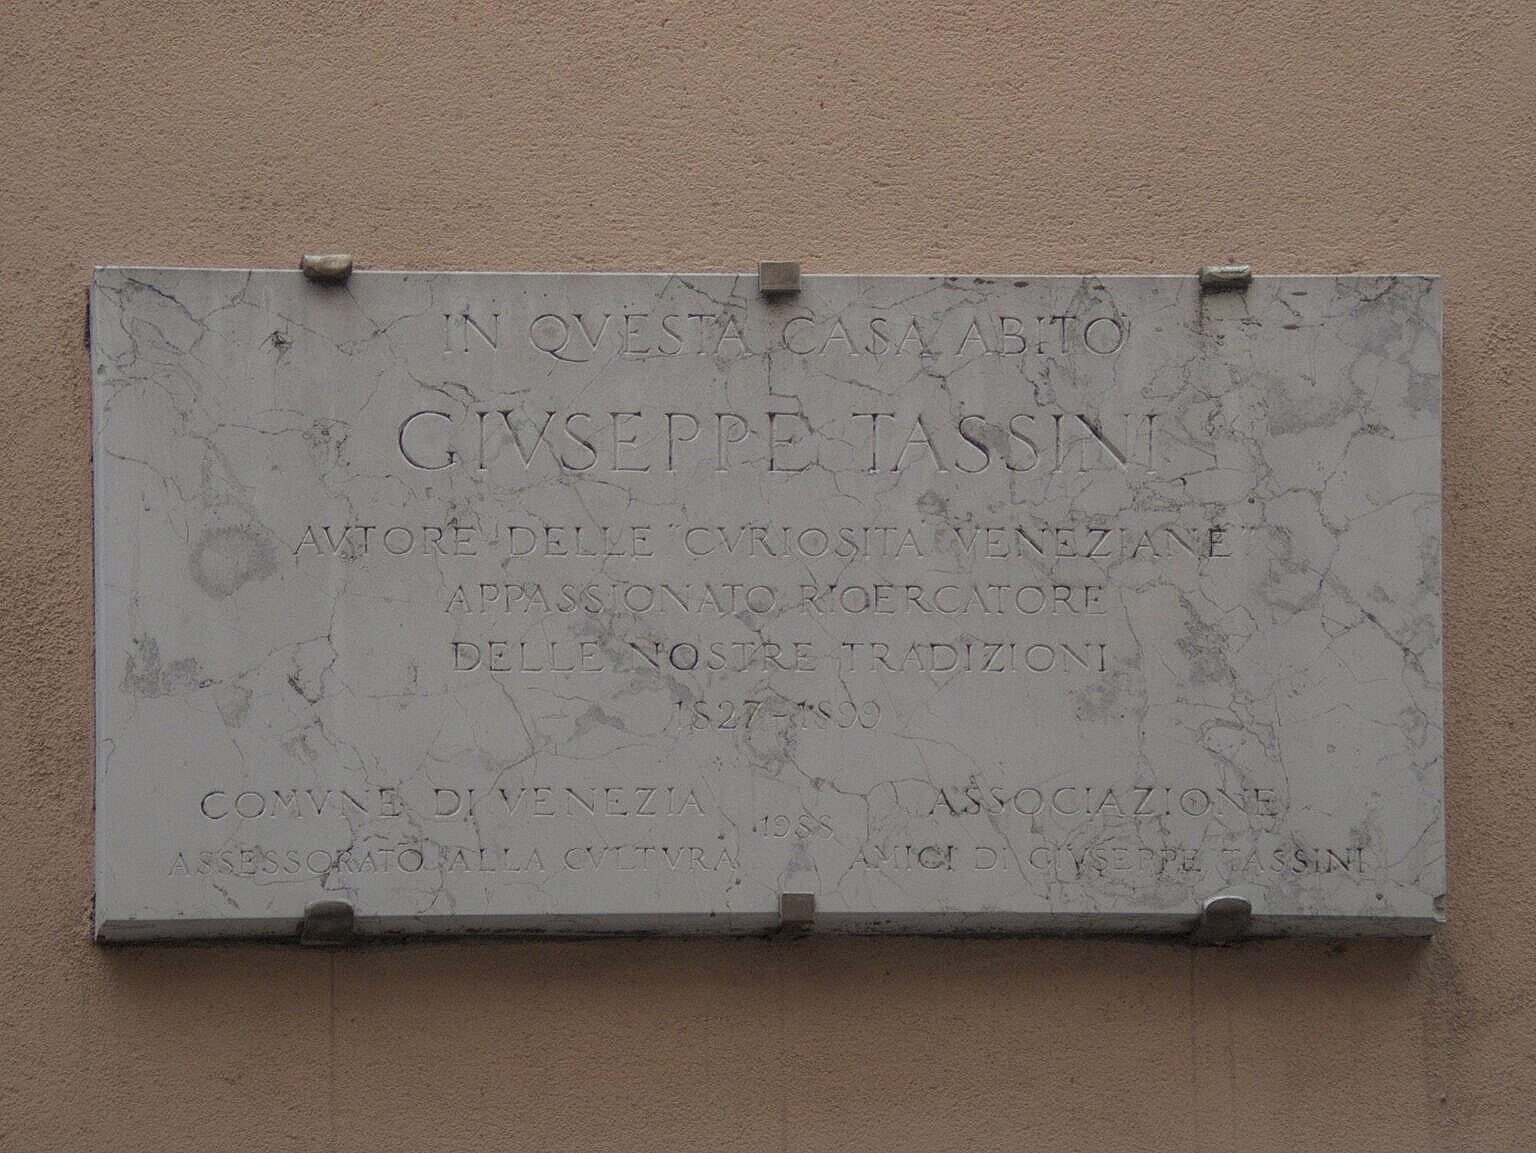 Plaque for Giuseppe Tassini where he lived